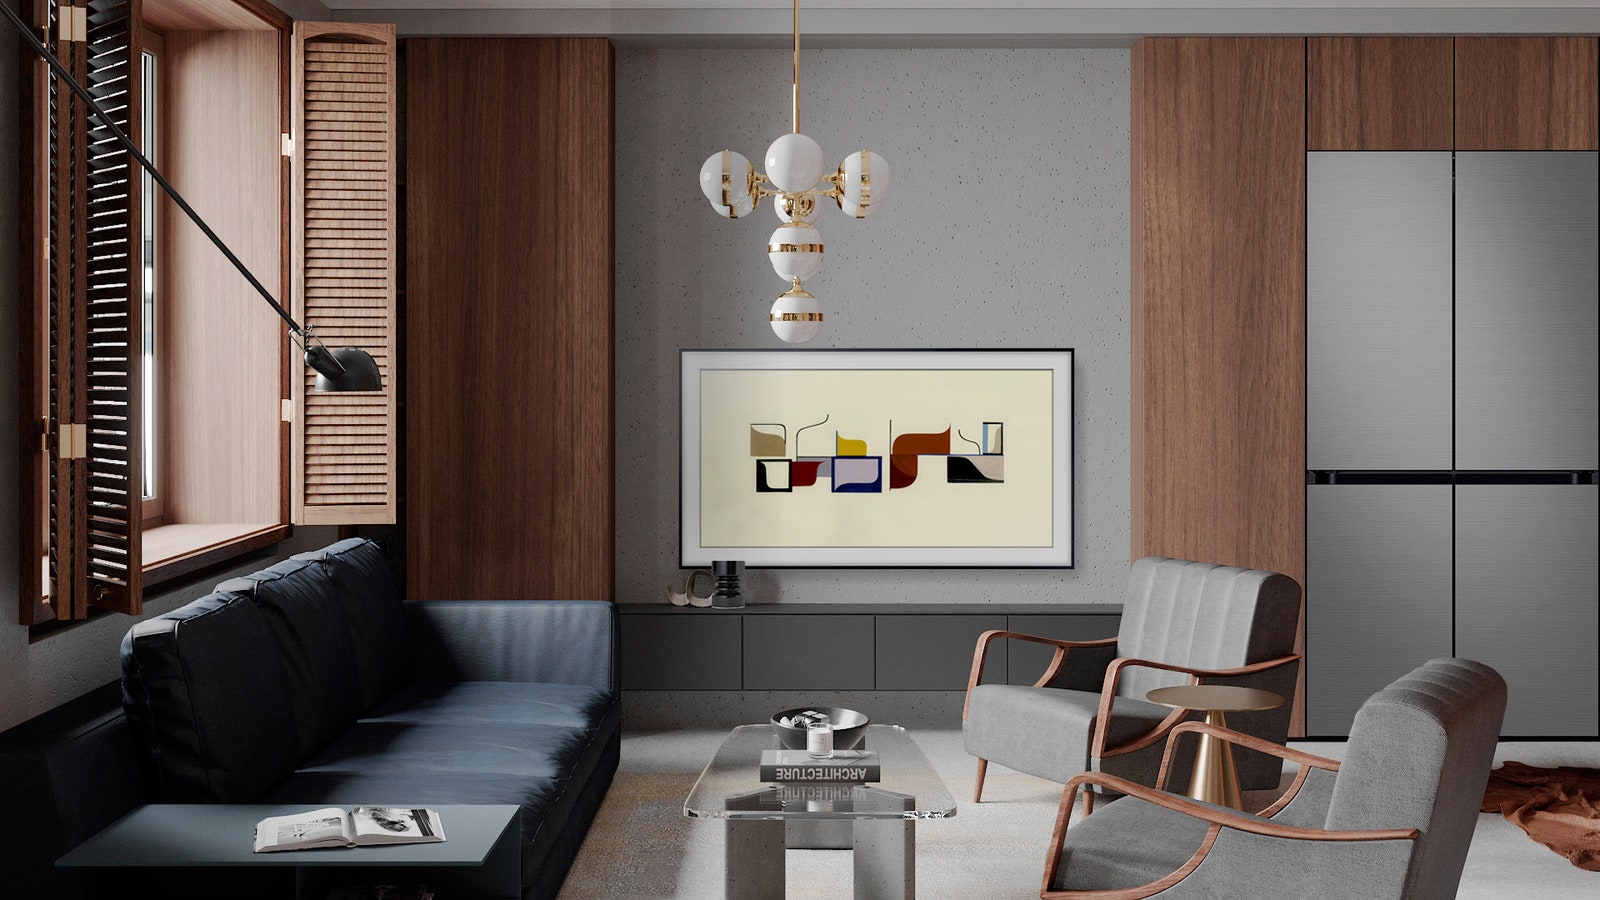 Телевизор The Frame и холодильник BeSpoke в интерьере по проекту Дарьи Леховой.